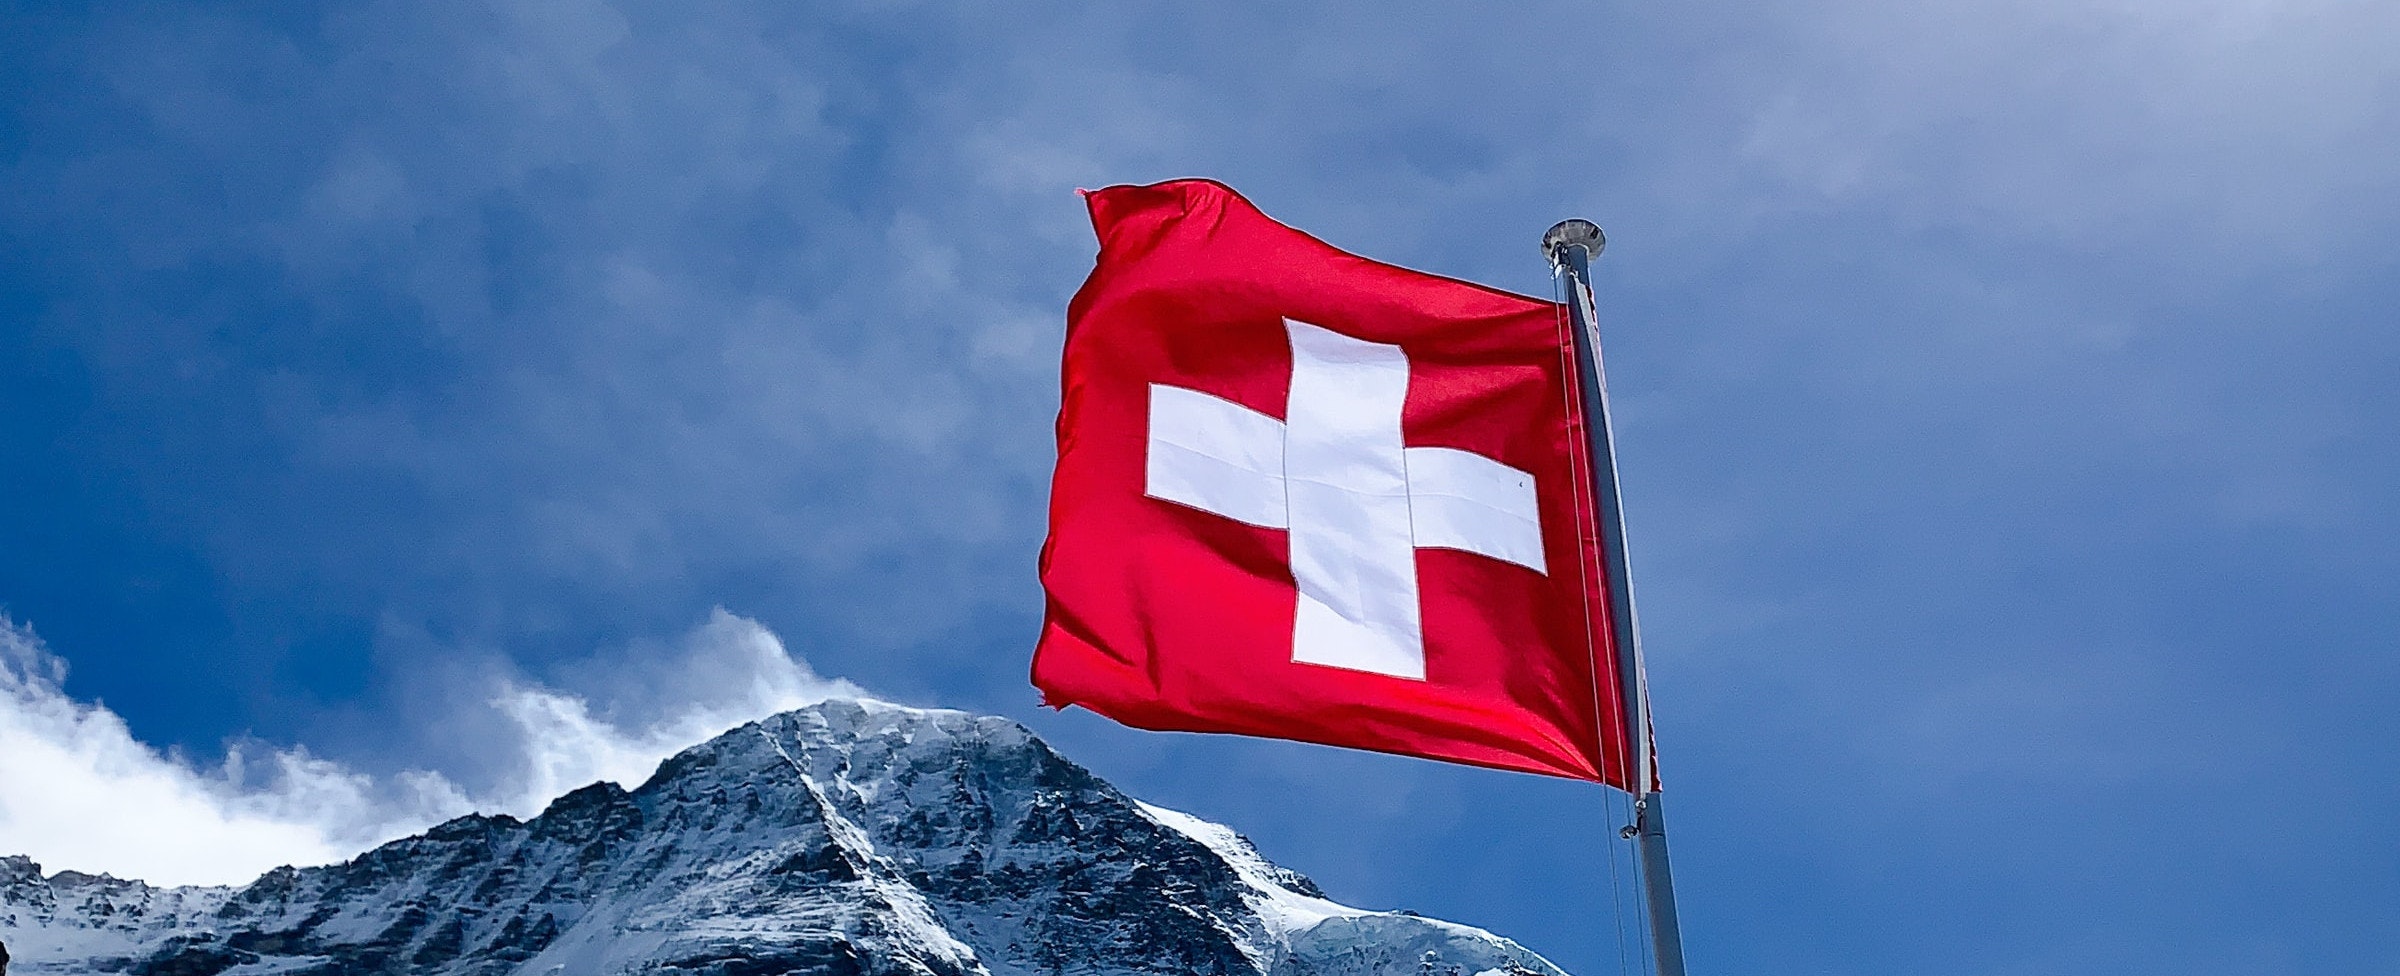 【 Cómo Abrir una Cuenta Bancaria en Suiza Legal Fácil y Rápido